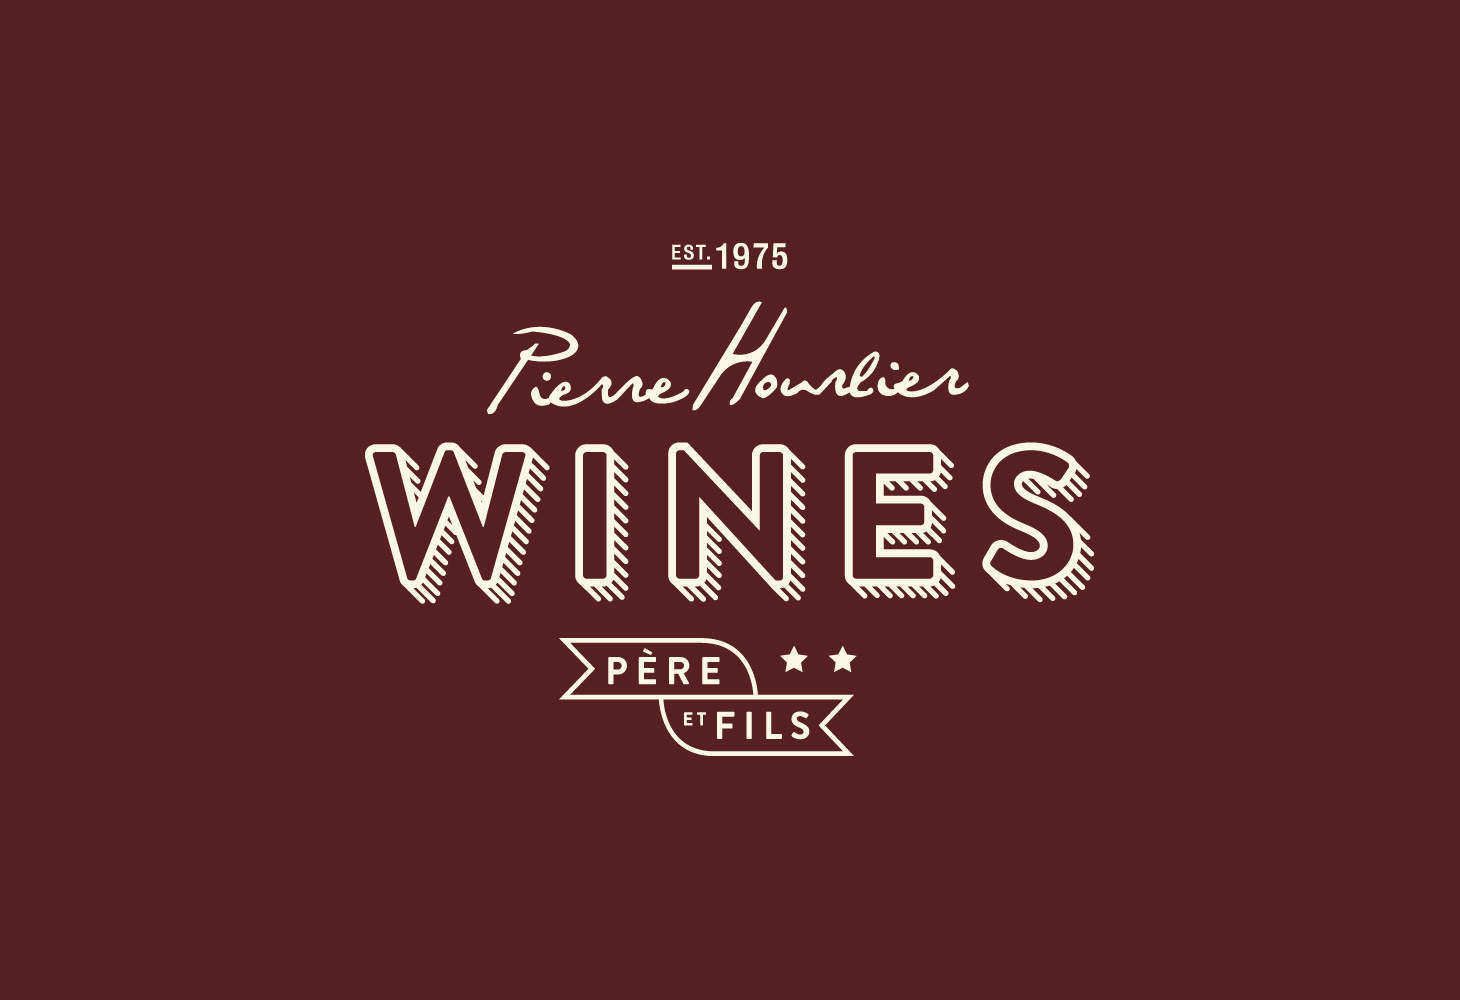 Hourlier Wines - Logomark